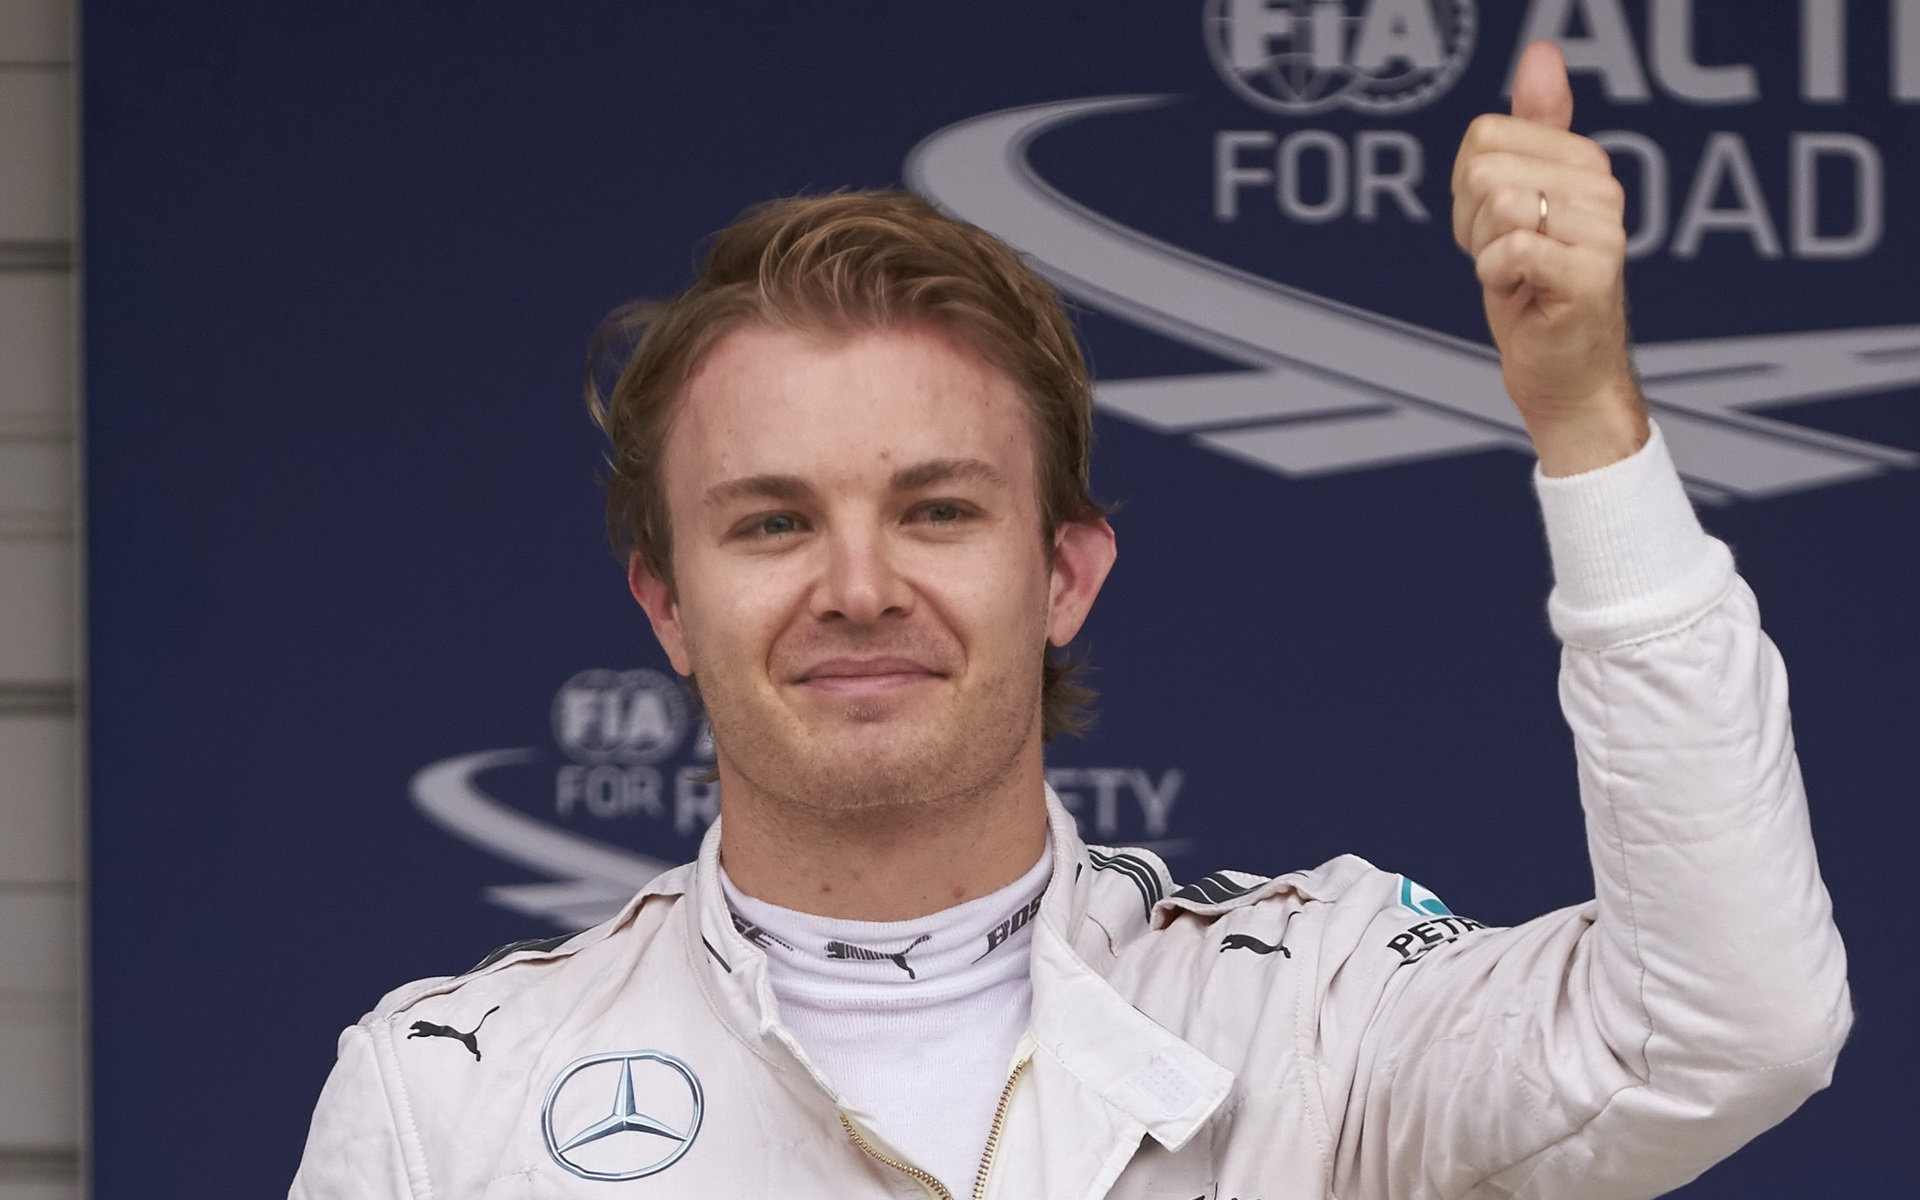 Polepší si Rosberg oproti Japonsku o jeden stupínek?